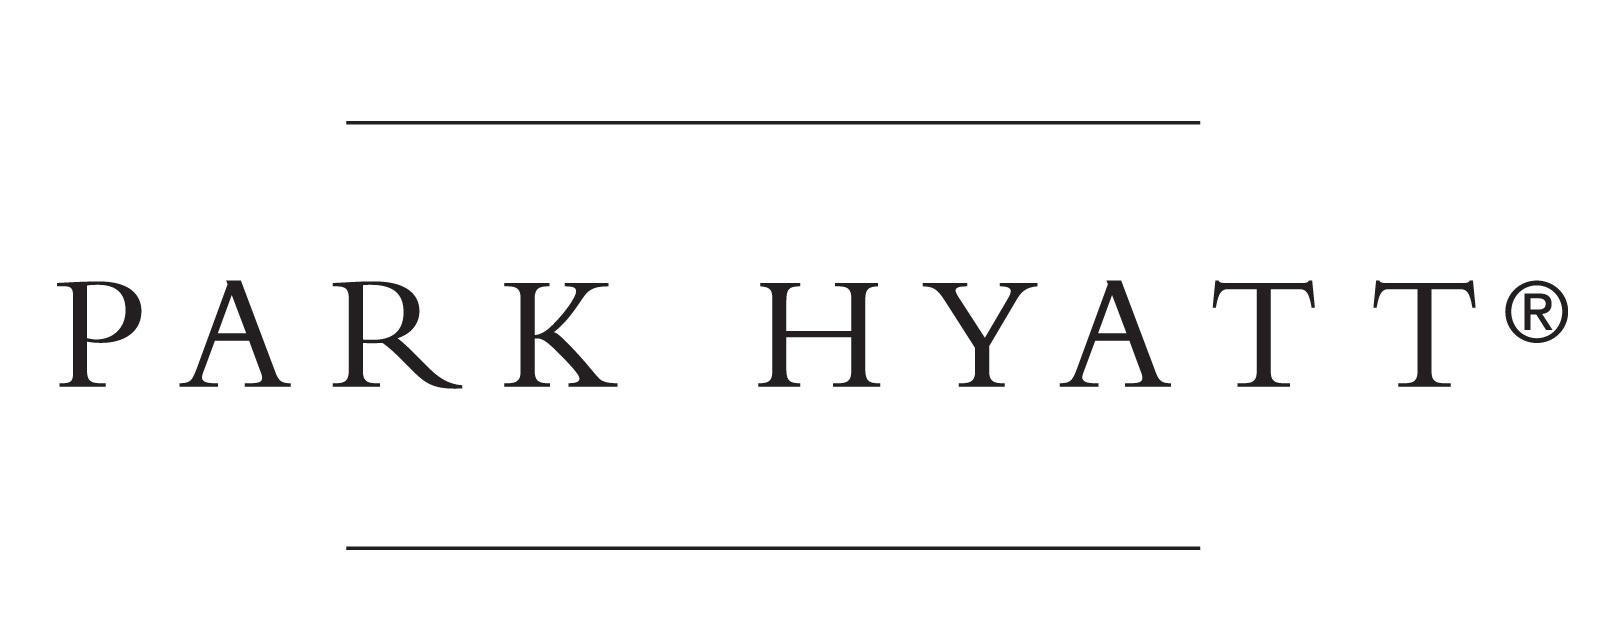 Night Free at Park Hyatt Hotels promo